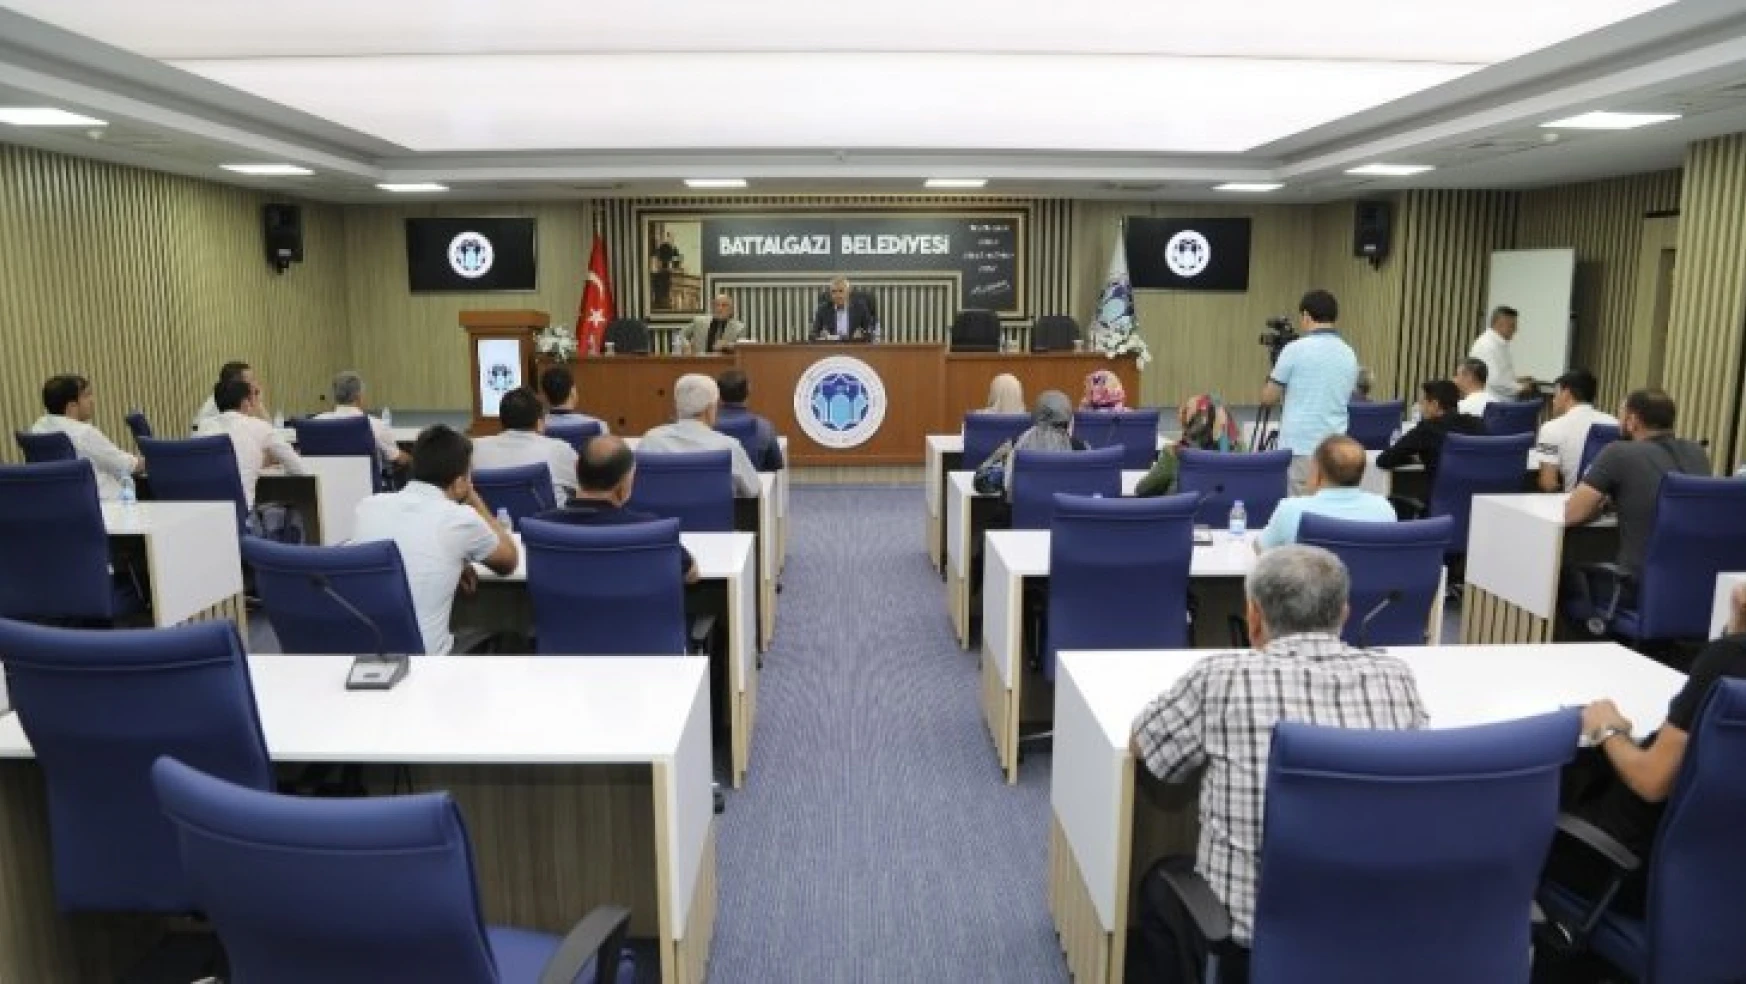 Battalgazi Belediyespor'da yeni yönetim ilk toplantısını gerçekleştirdi